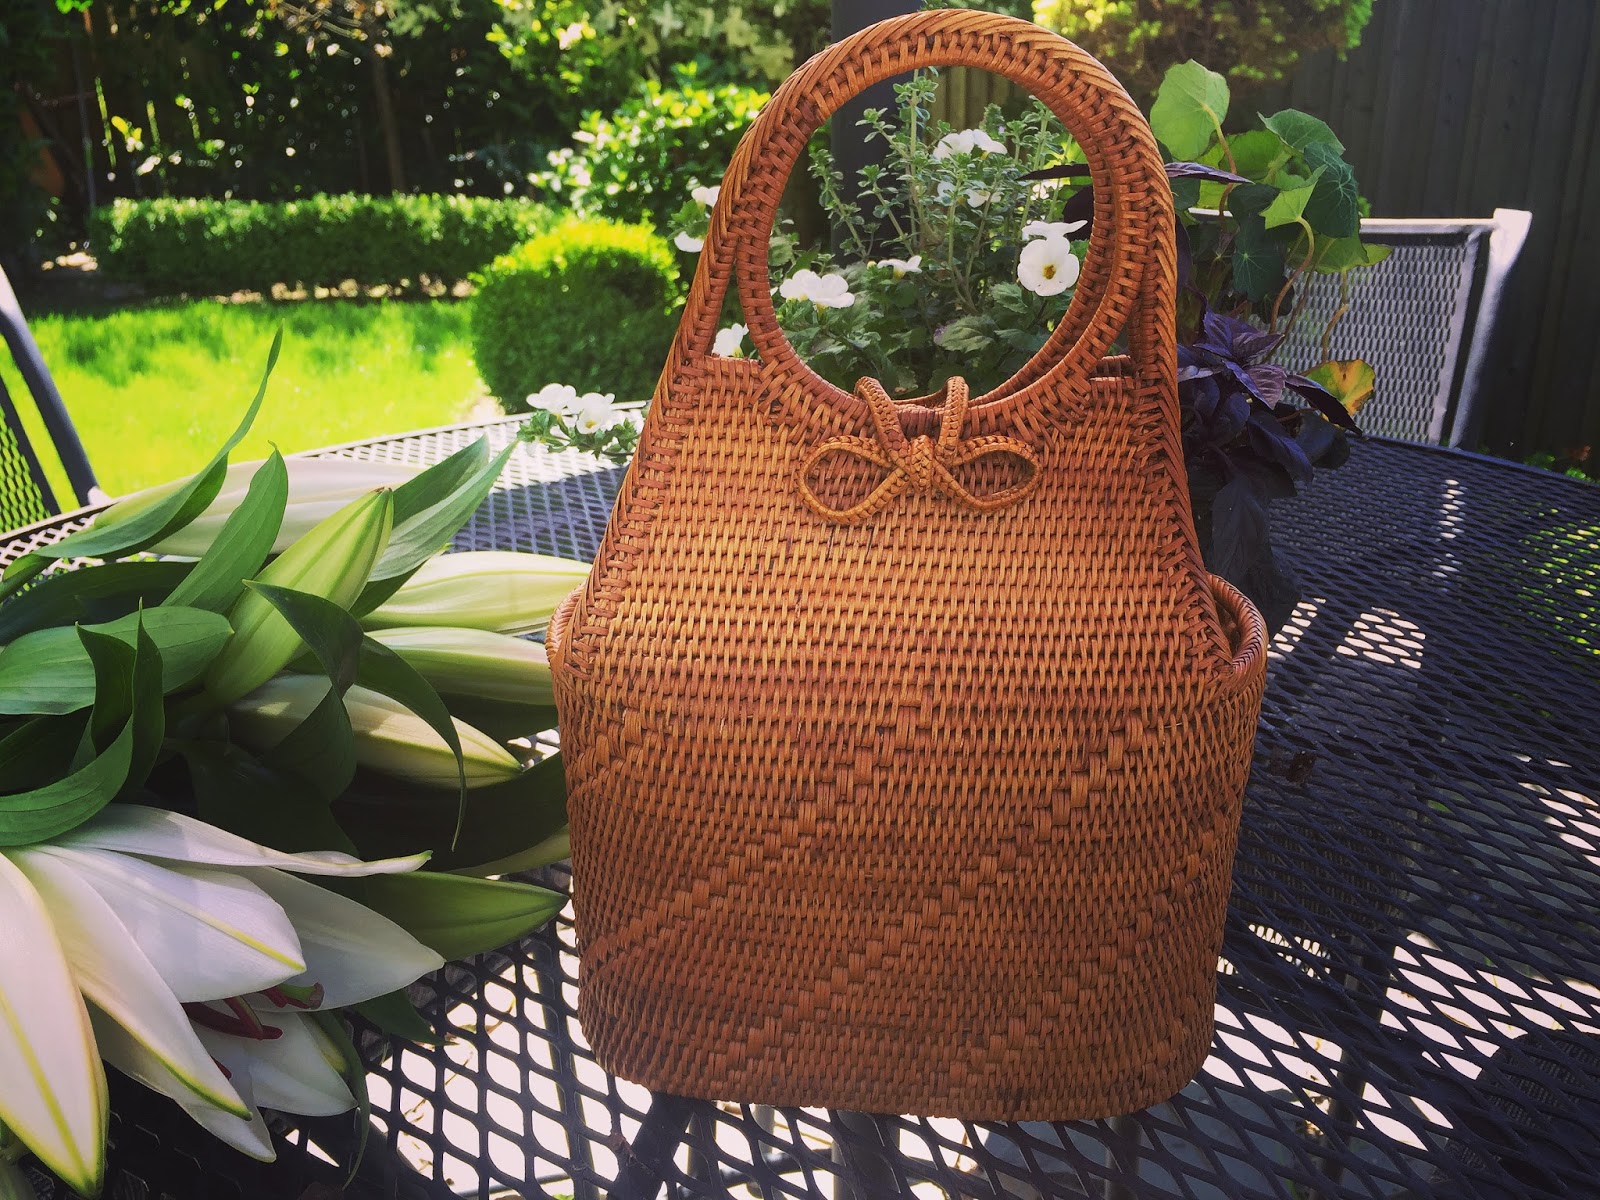 Zara basket bags. Jane Birkin is among the low cost multi-brand's